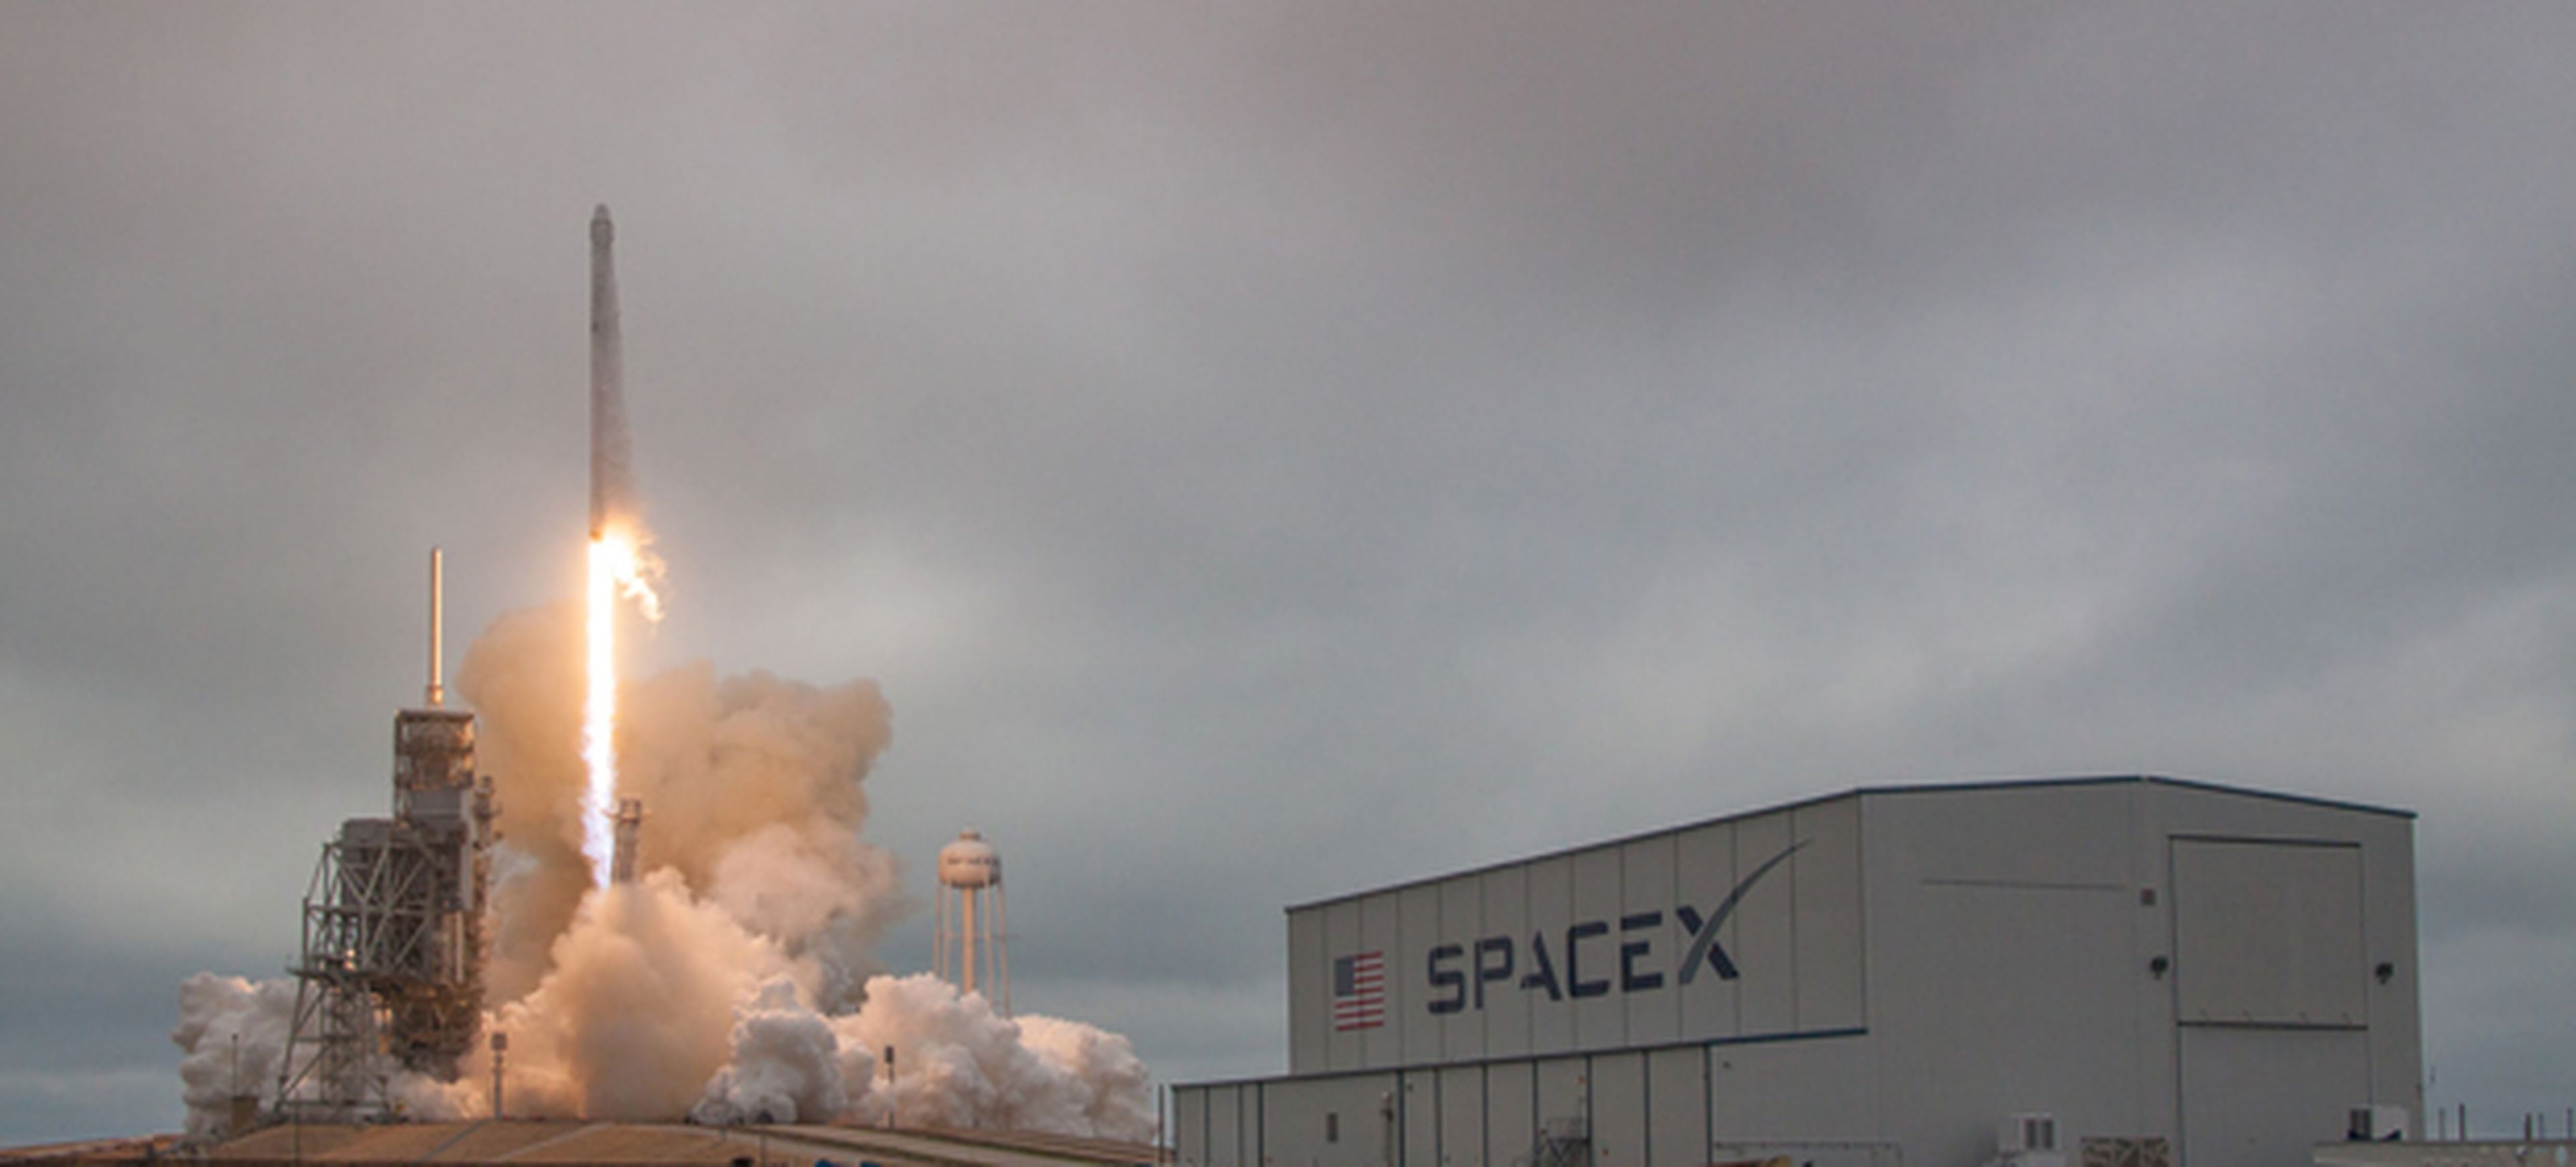 Lanzamiento de SpaceX